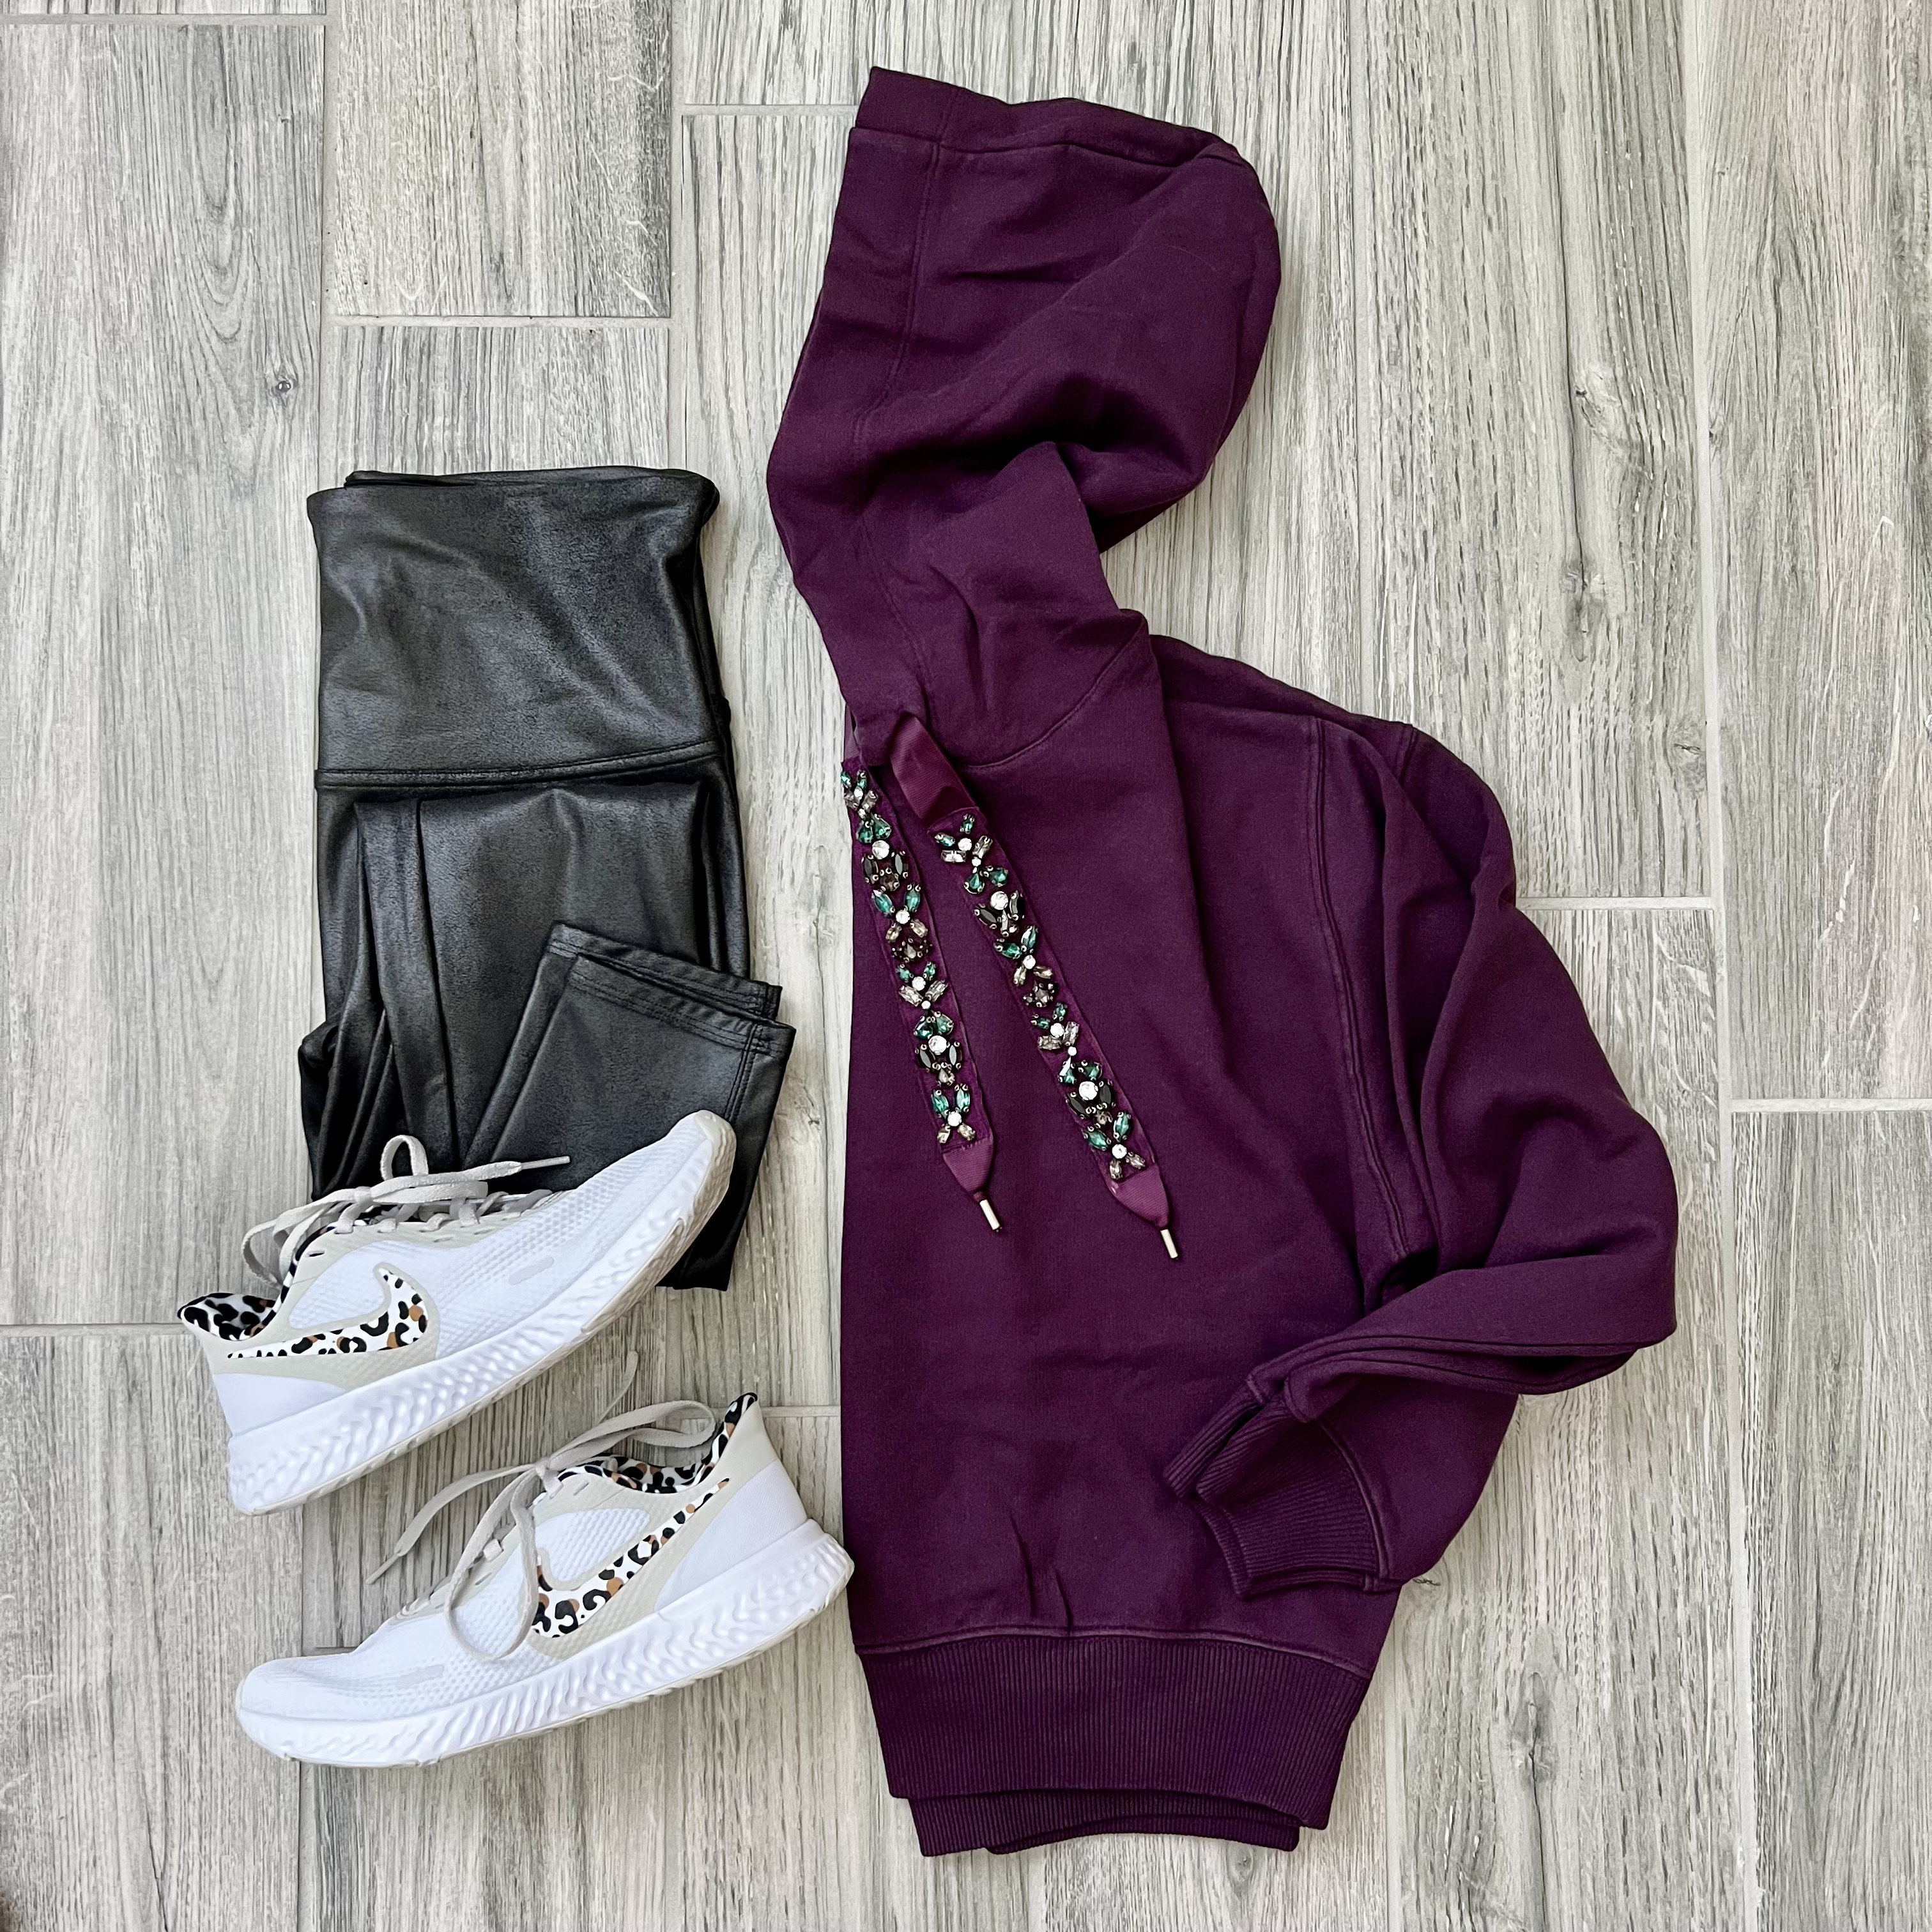 Express embellished hoodie, Nike leopard sneakers, Spanx leggings